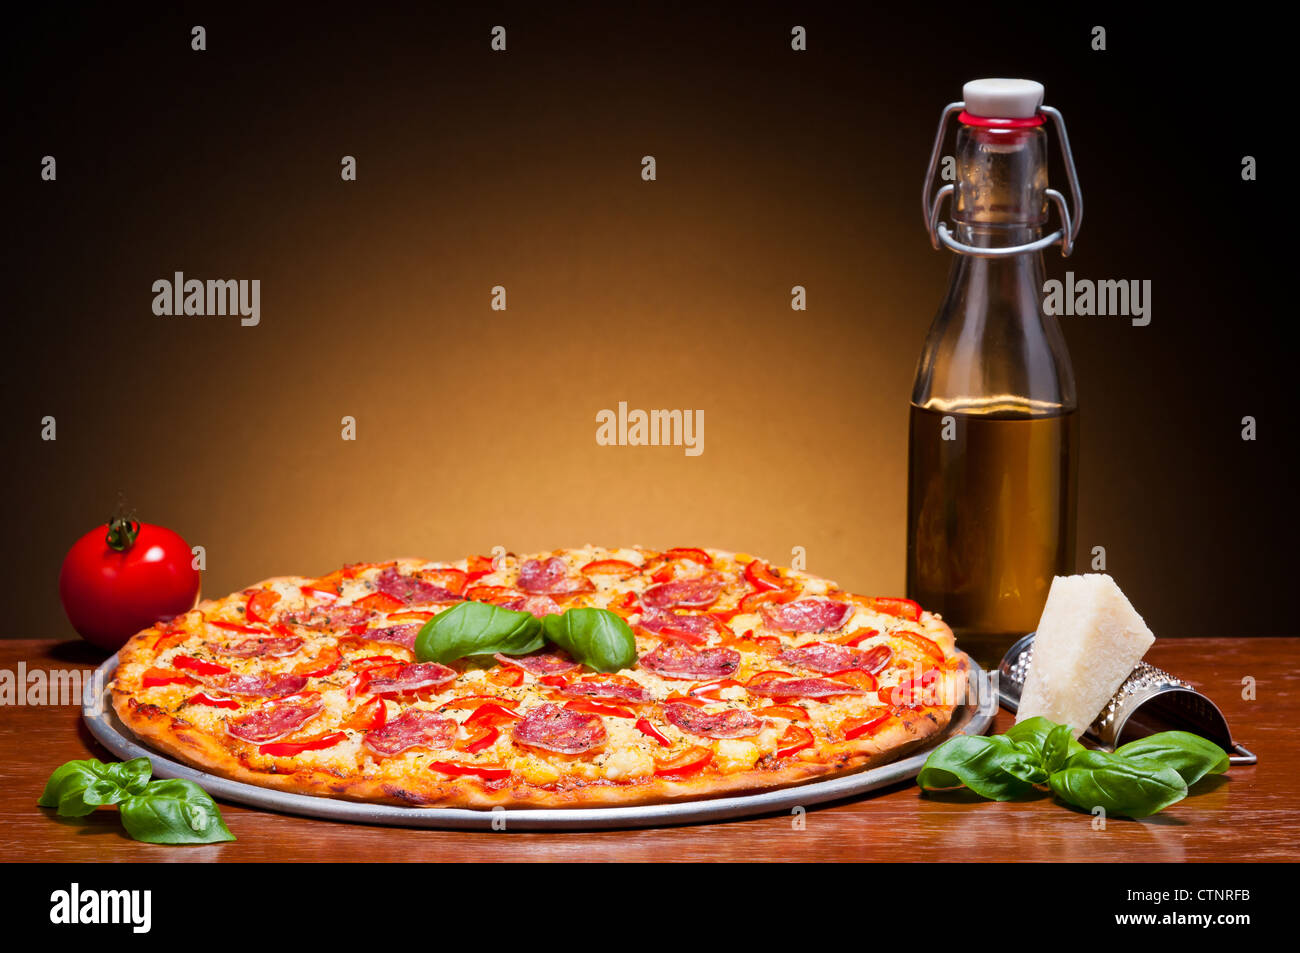 Italiano tradizionale pizza salame still life Foto Stock